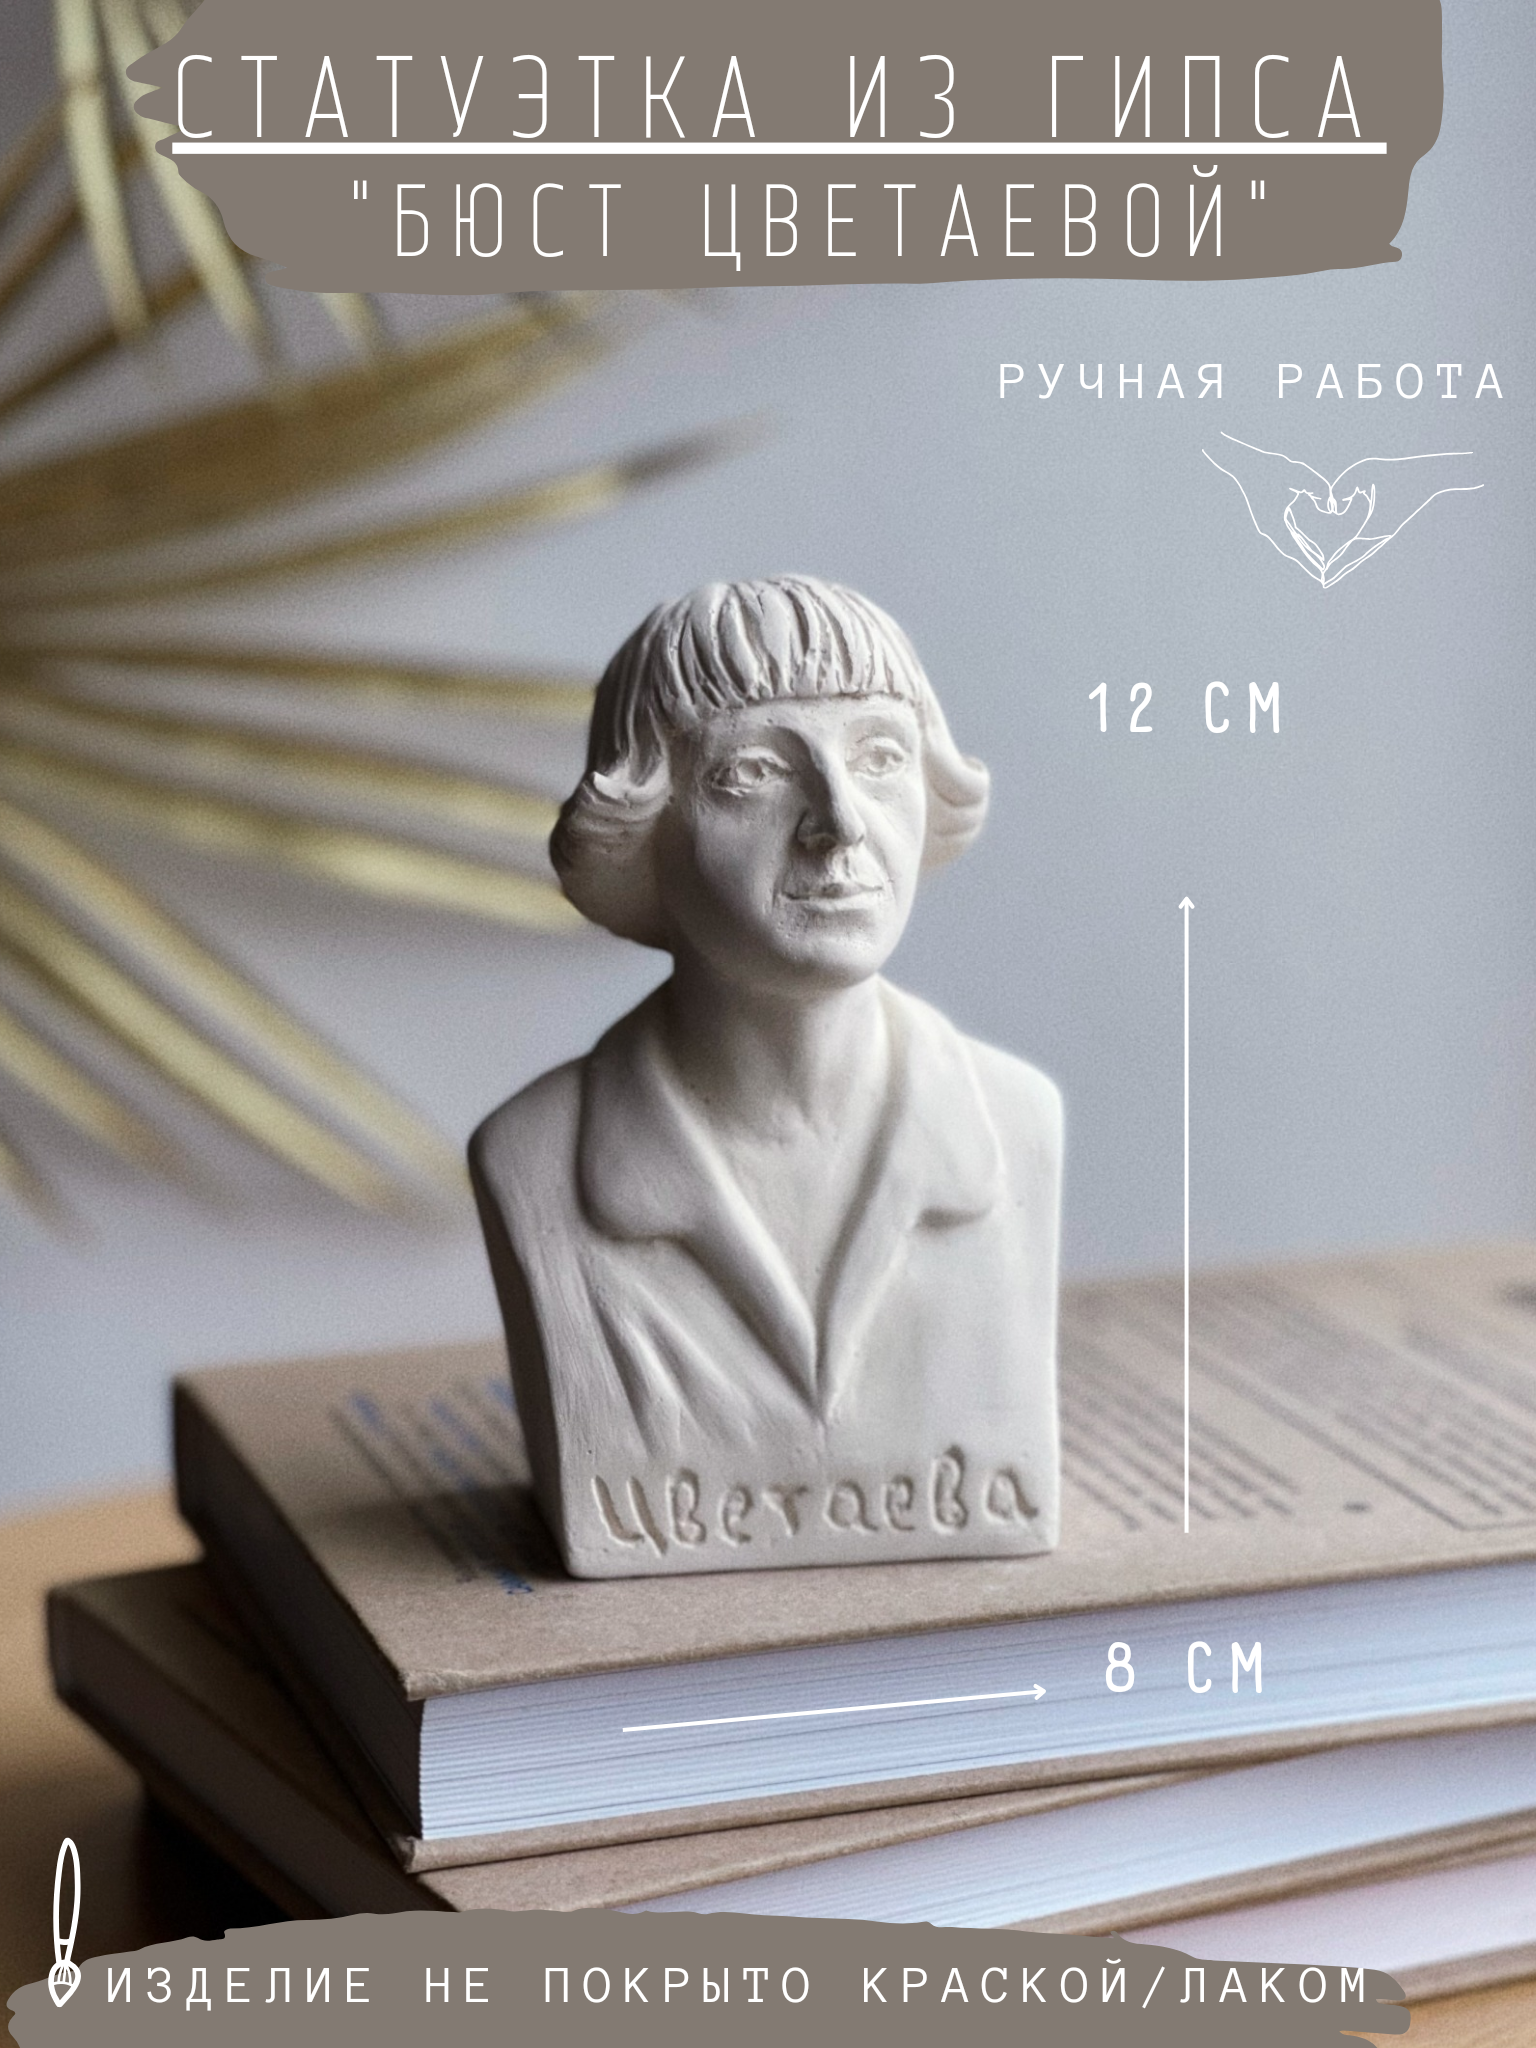 Статуэтка Бюст Цветаевой, 12 см гипс